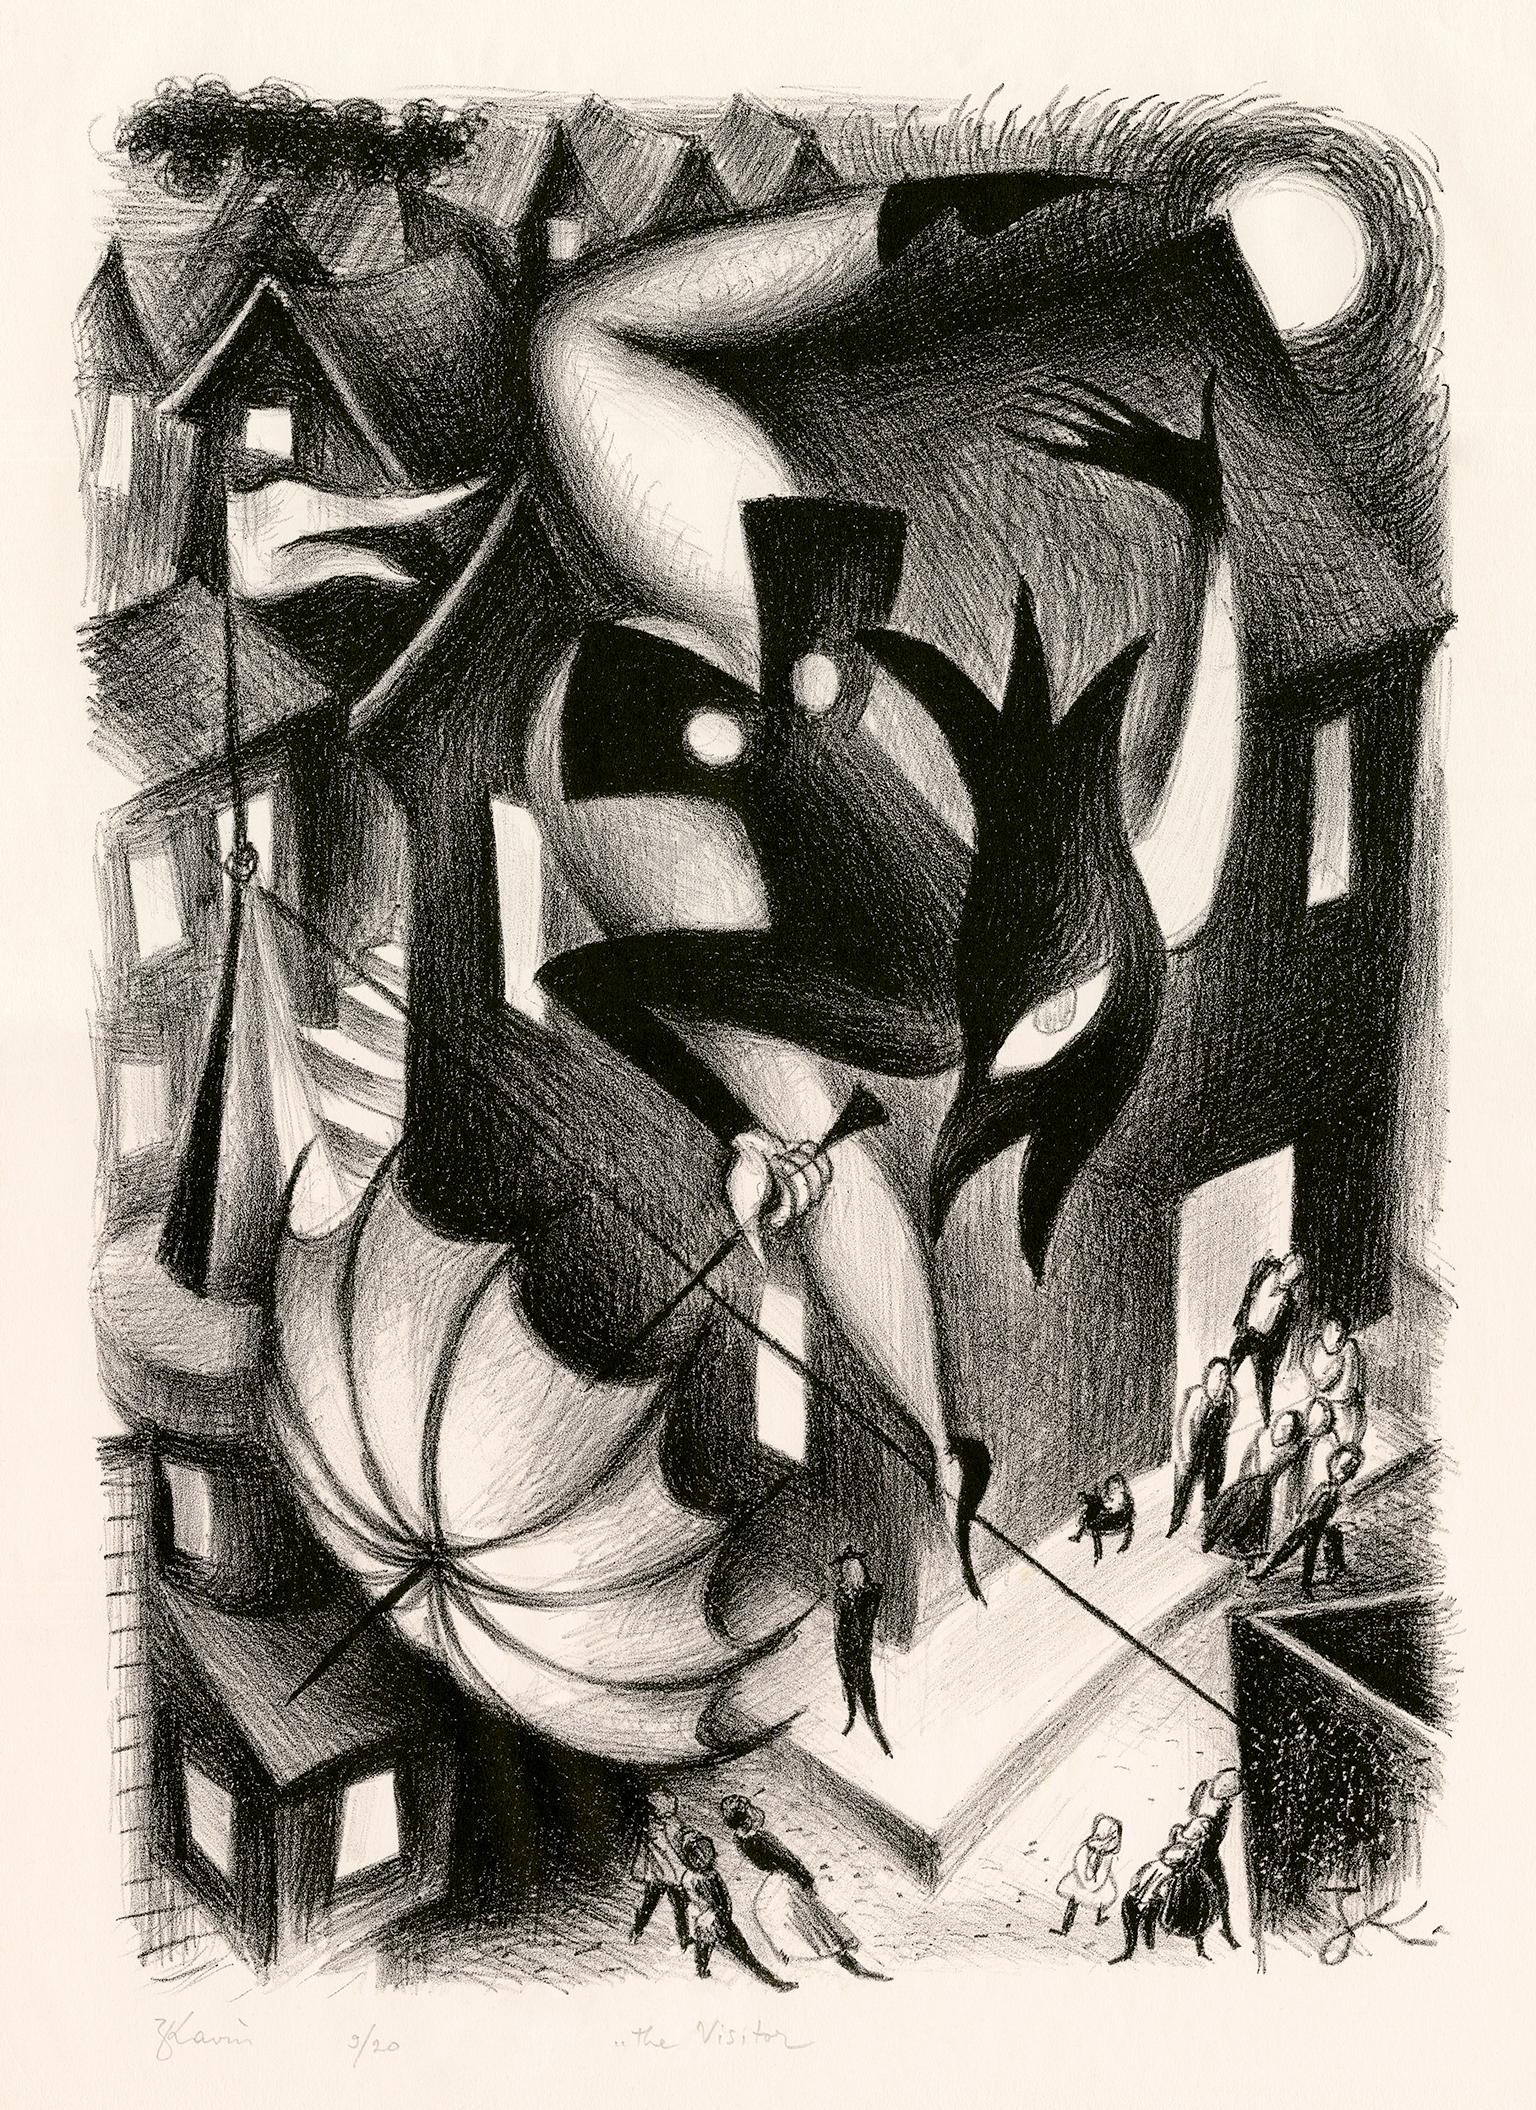 Zena Kavin Figurative Print – The Visitor" - Surrealistische Fantasie der 1930er Jahre